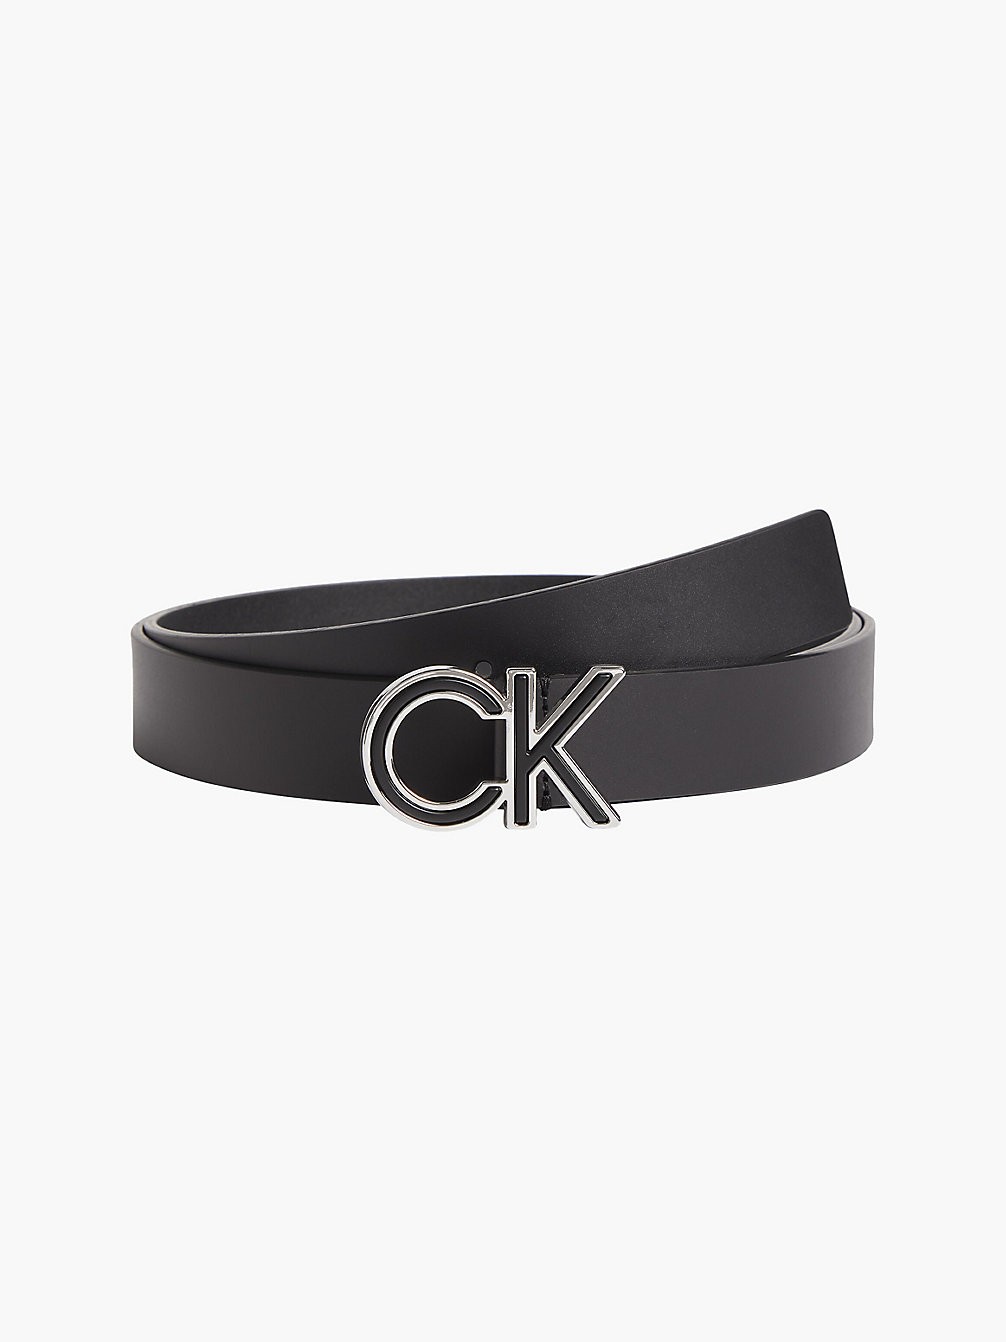 CK BLACK Leather Unisex Logo Belt undefined unisex Calvin Klein